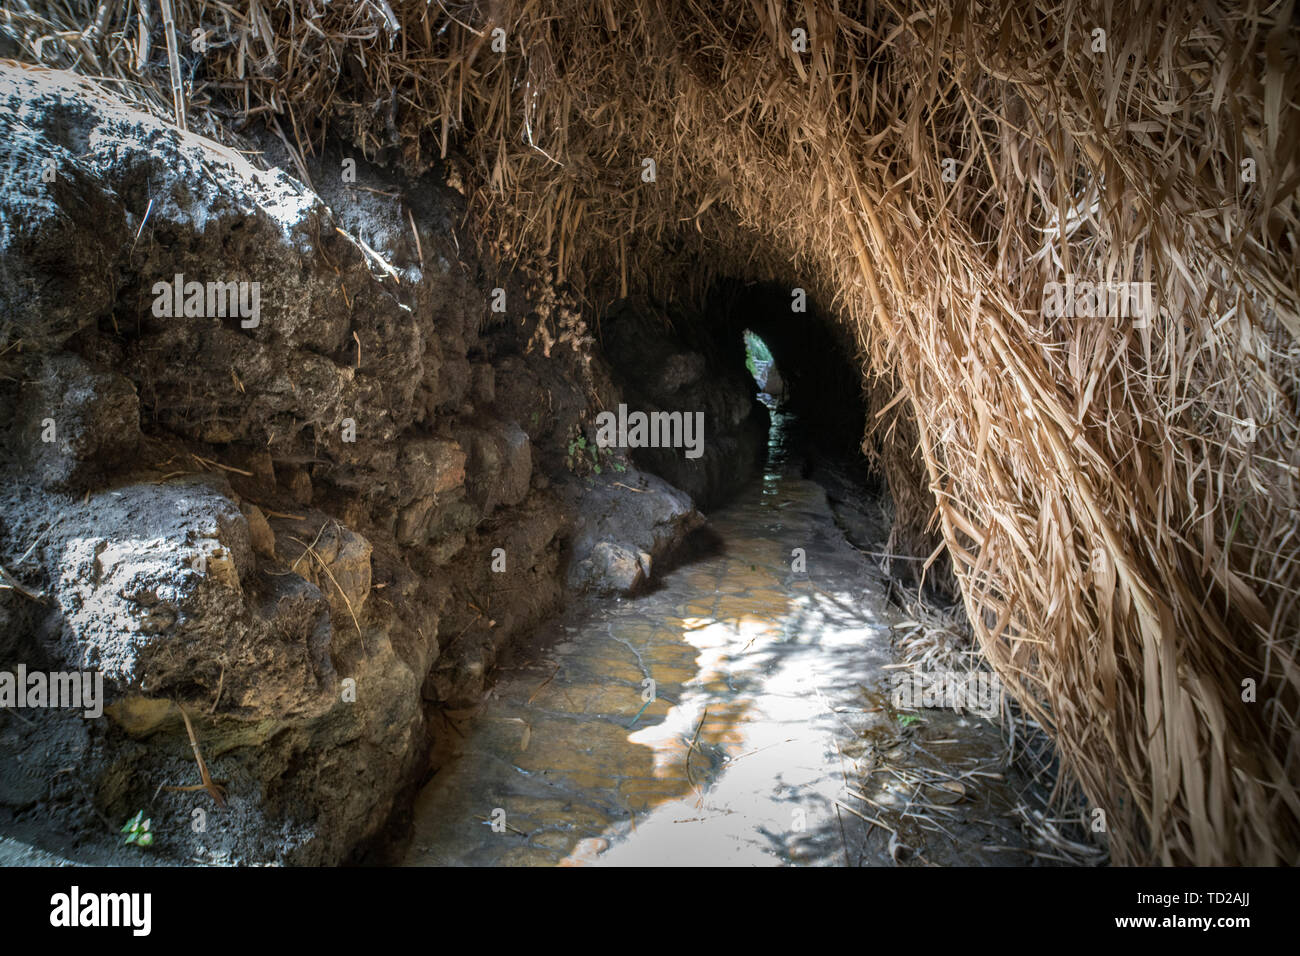 Natürliche Galerie von Cliff Steine und grünen. Geheimnis mystischer schmalen Weg durch die Höhle. Ein Gedi - Naturpark und Nationalpark, Israel Stockfoto